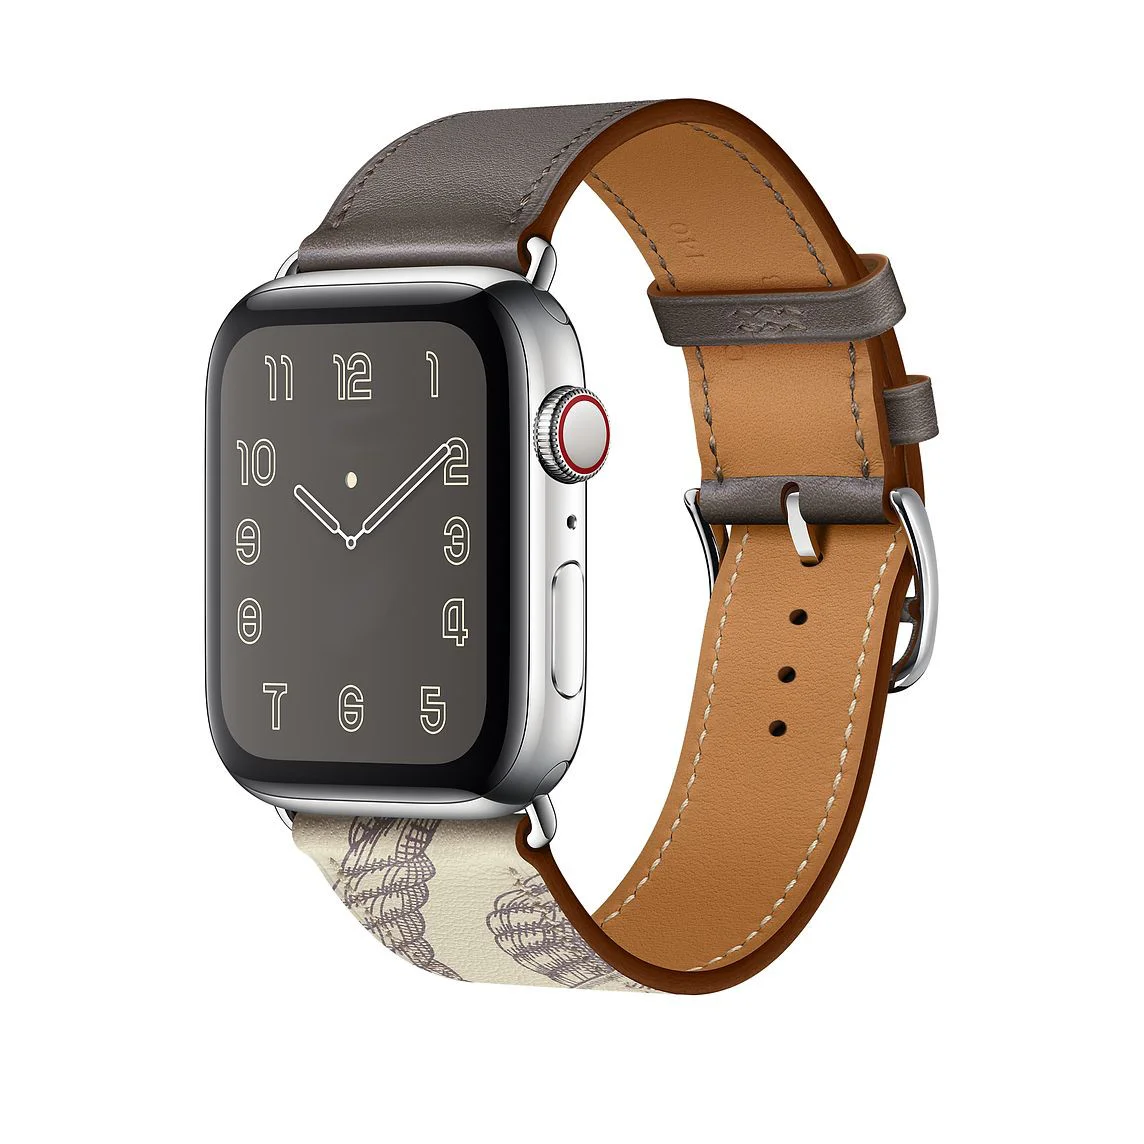 Řemínek iMore Single Tour Apple Watch Series 4/5/6/SE /40mm) - Cín/Beton